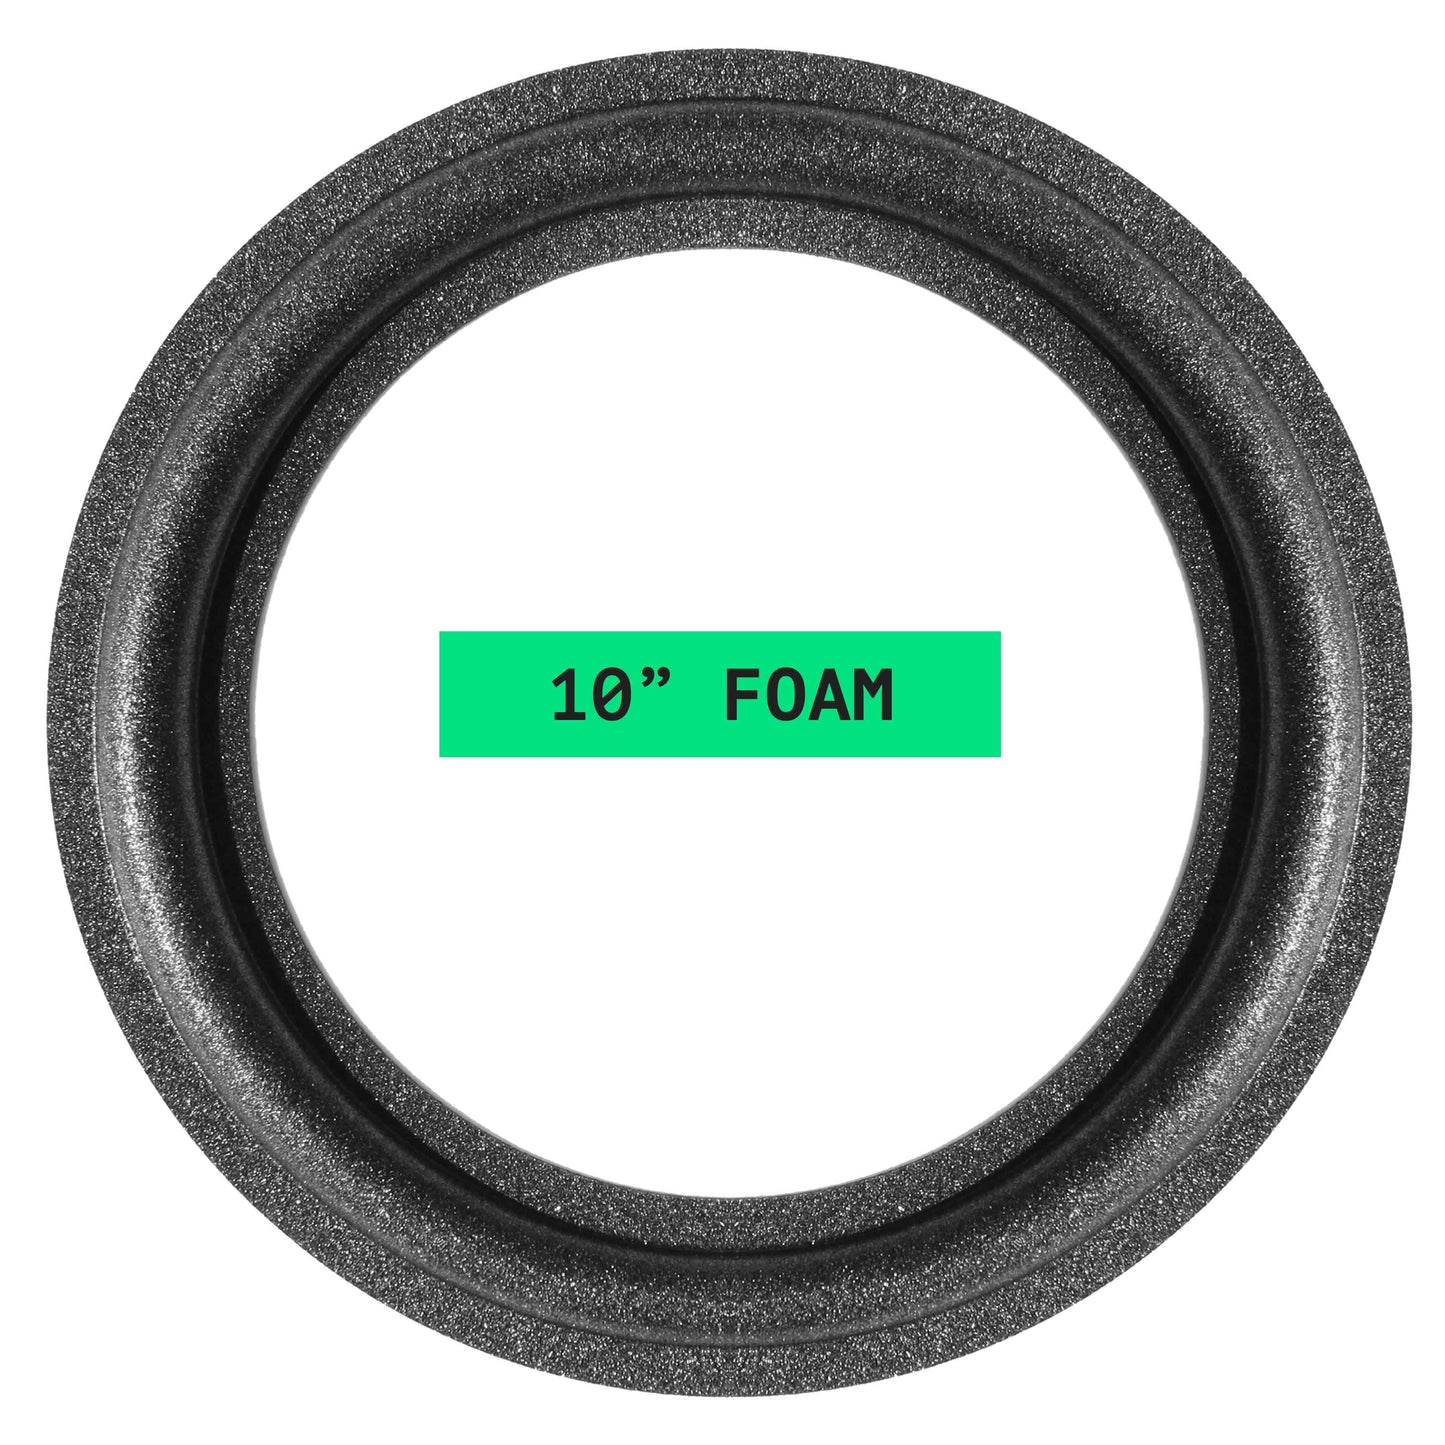 Bose 10" Foam Repair Kit